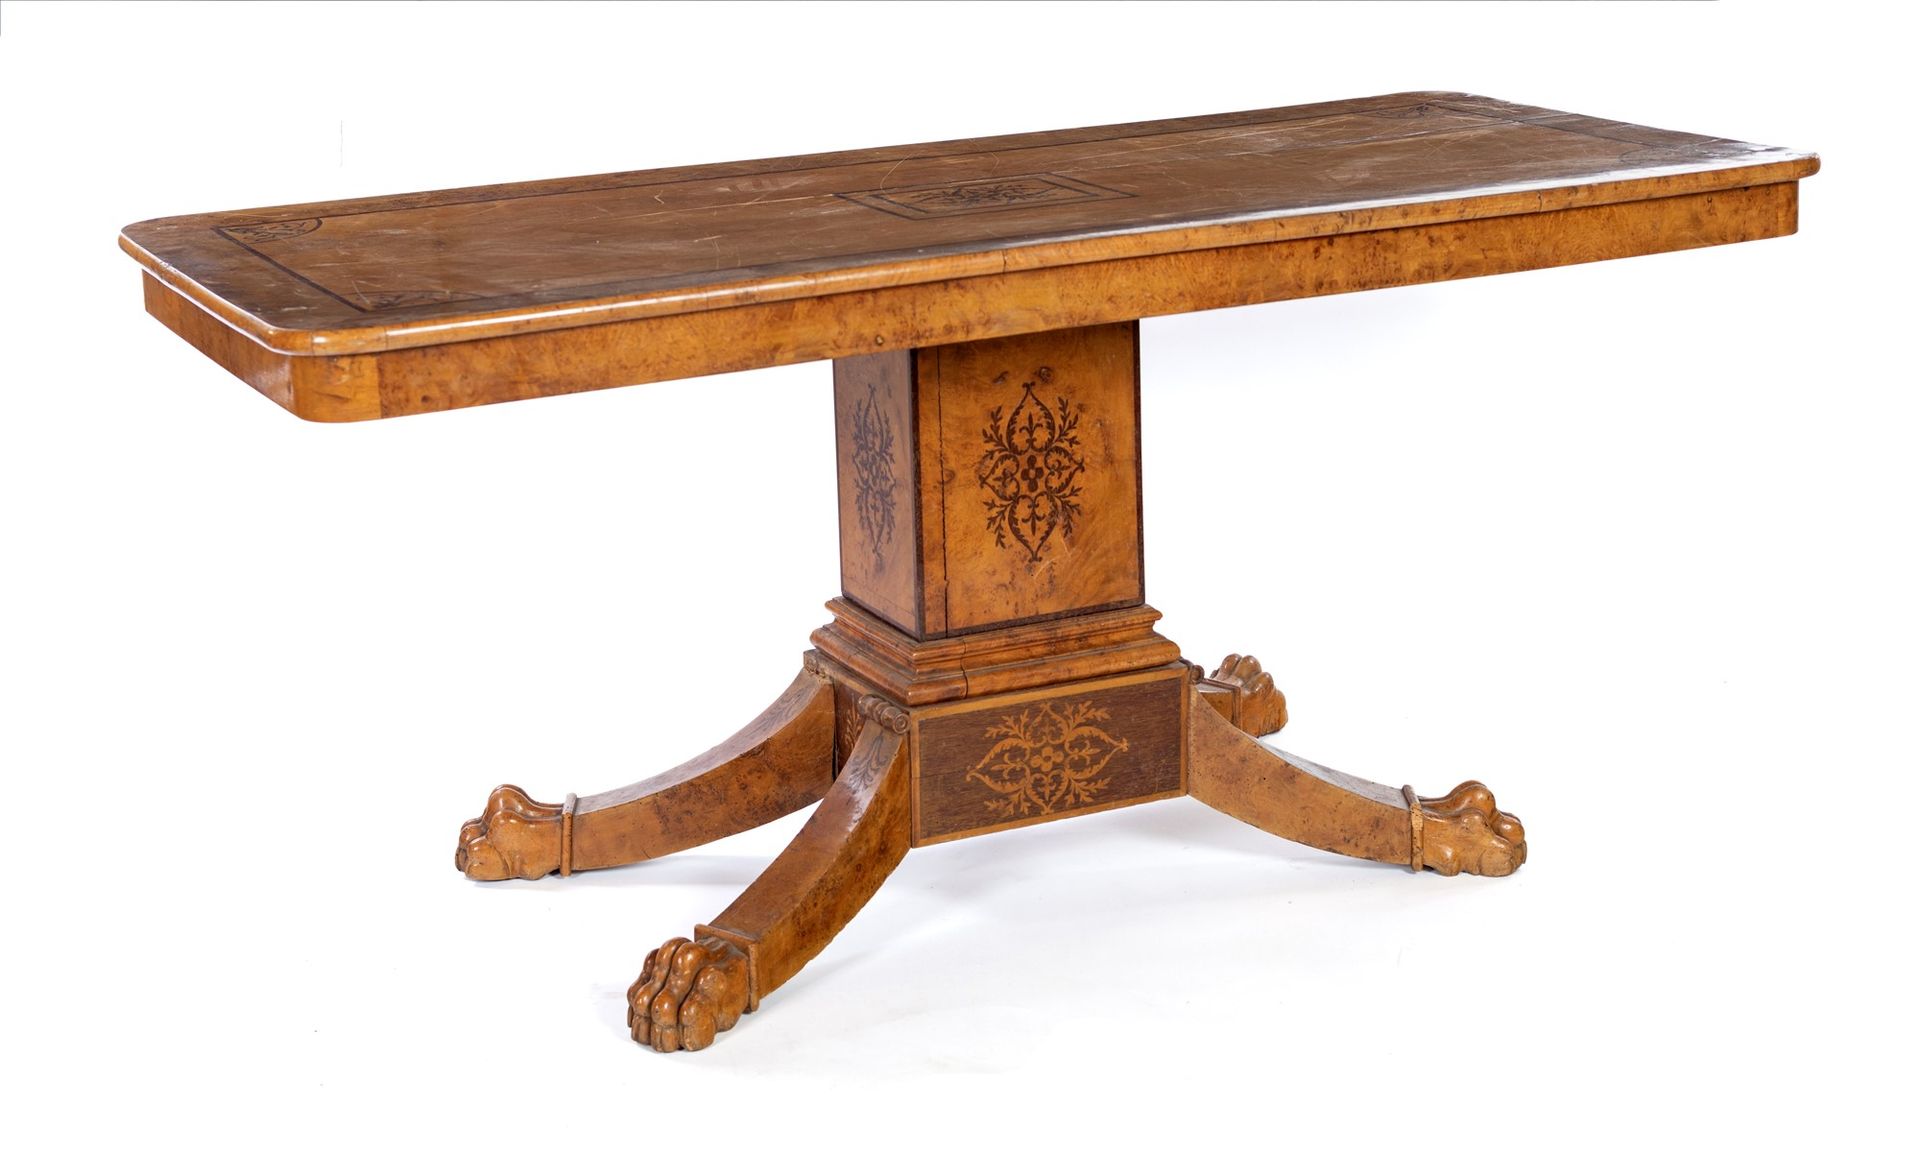 Charles X table decorado con incrustaciones; soporte central